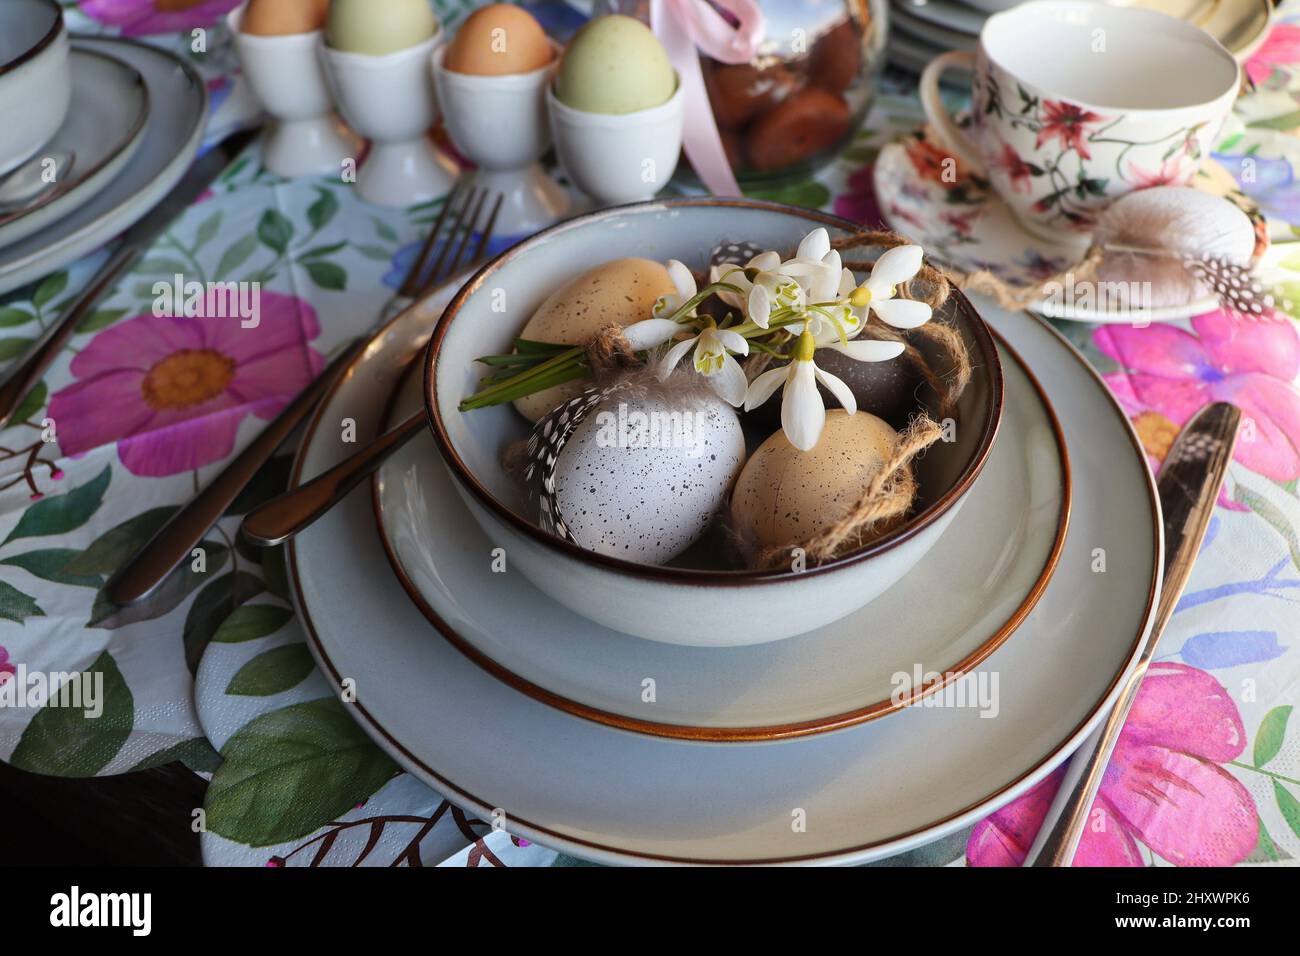 Elegante tavolo di Pasqua con uovo in ciotola sul tavolo. Moderno uovo di pasqua naturale tinto, fiori su piatto e posate. Pasqua festive decorazioni tavola Foto Stock